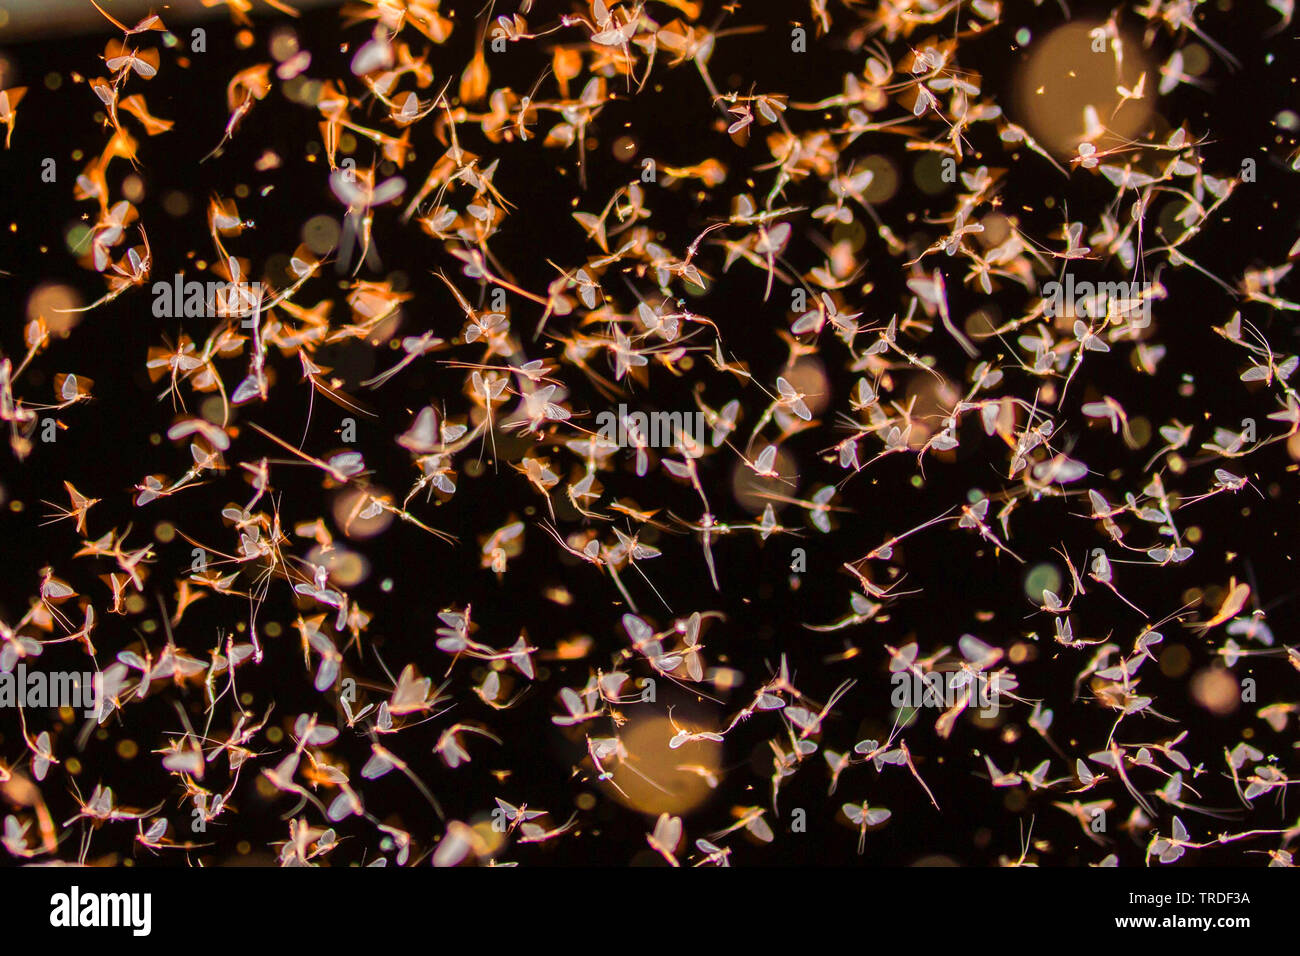 Virgin mayfly (Ephoron virgo, Polymitarcis virgo), mass hatching, flying swarm, Germany, Bavaria Stock Photo